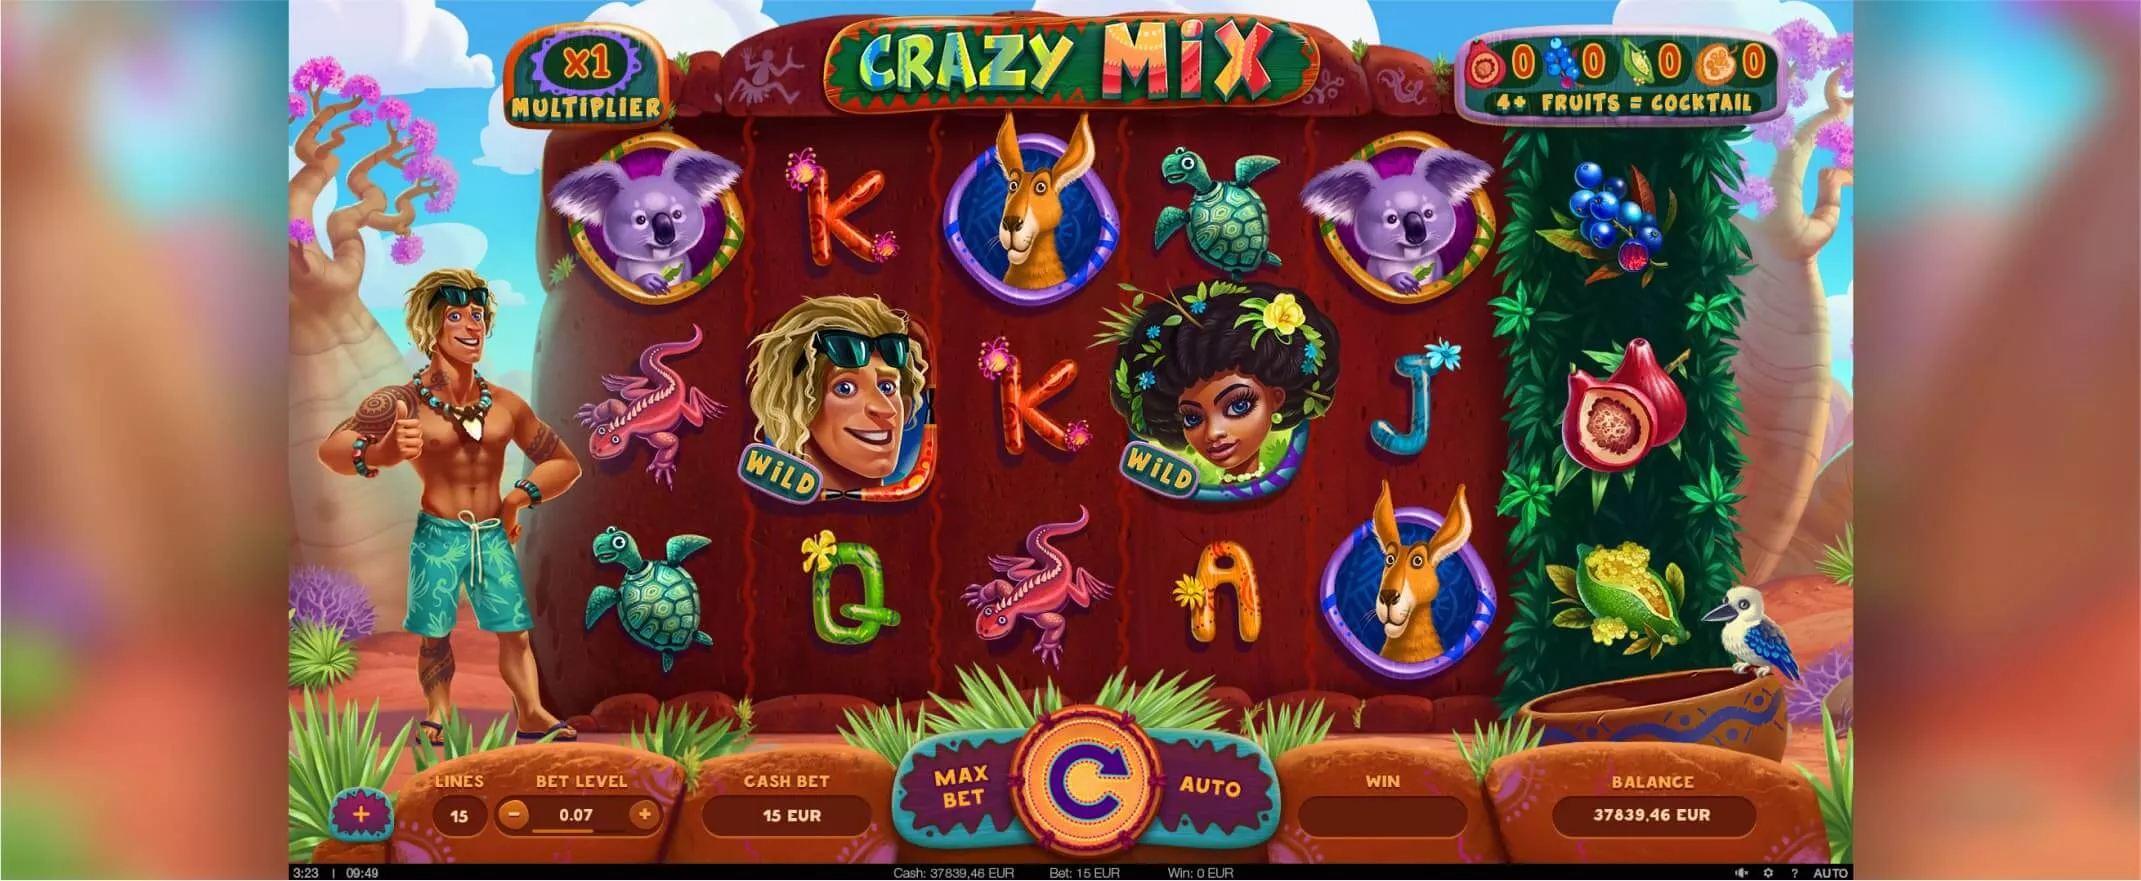 Crazy Mix slot screenshot of the reels